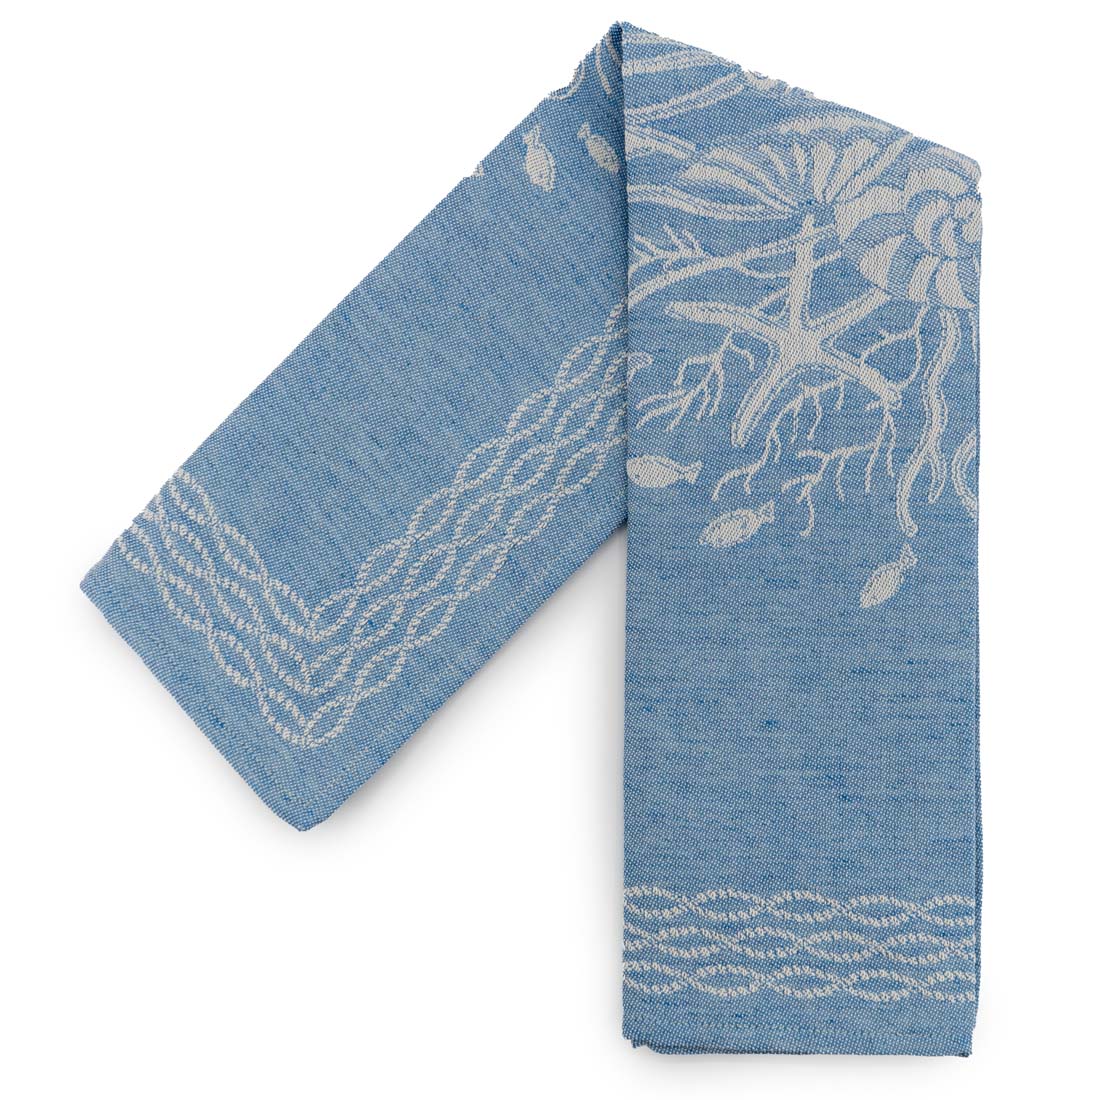 Turquoise Italian Linen Tea Towel